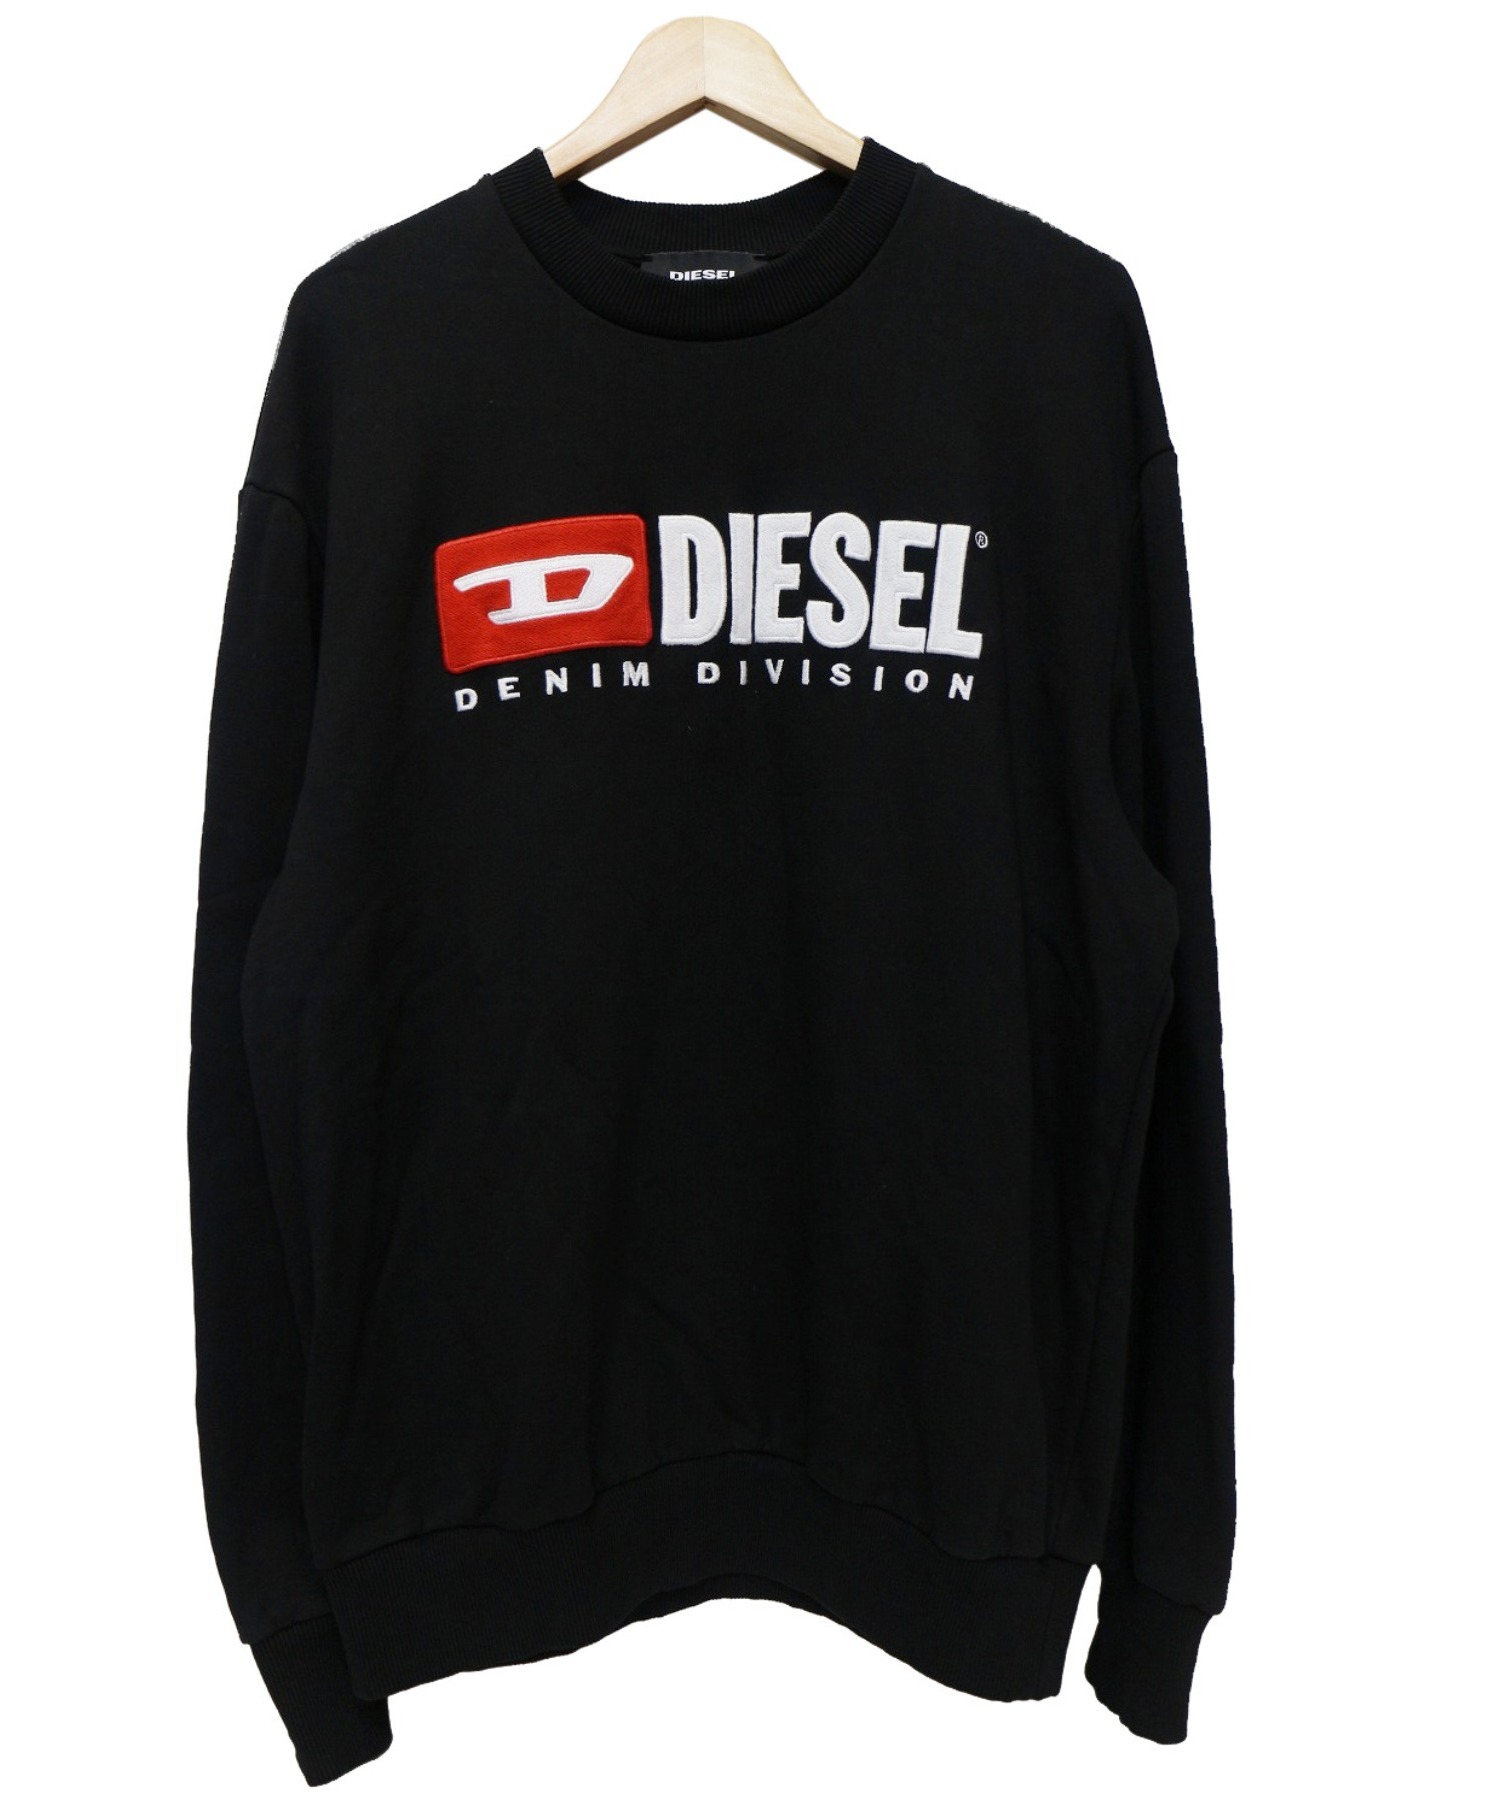 70以上 diesel ロゴ 画像 160653-Diesel ロゴ 画像